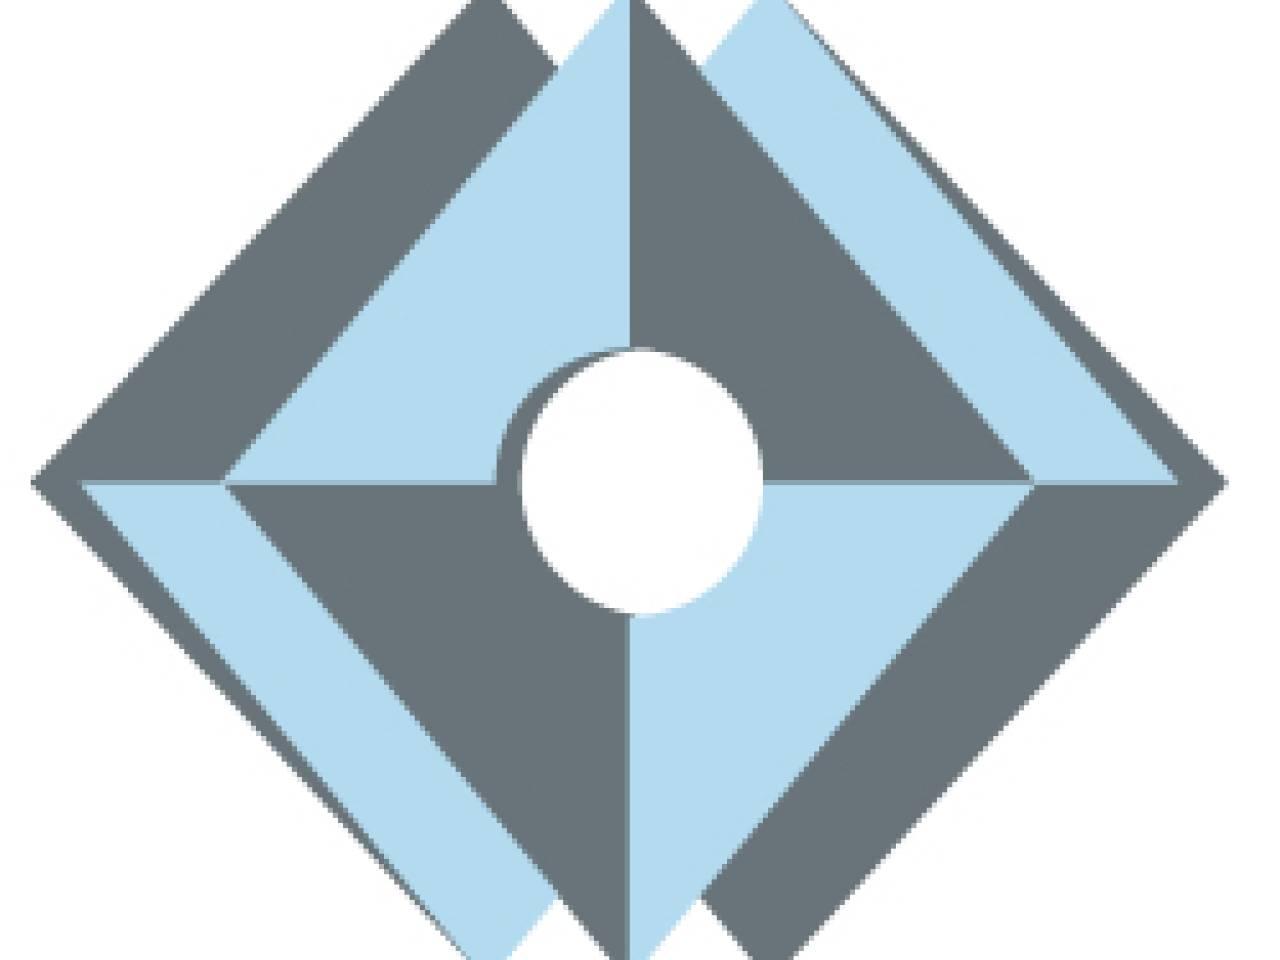 Eurochem logo